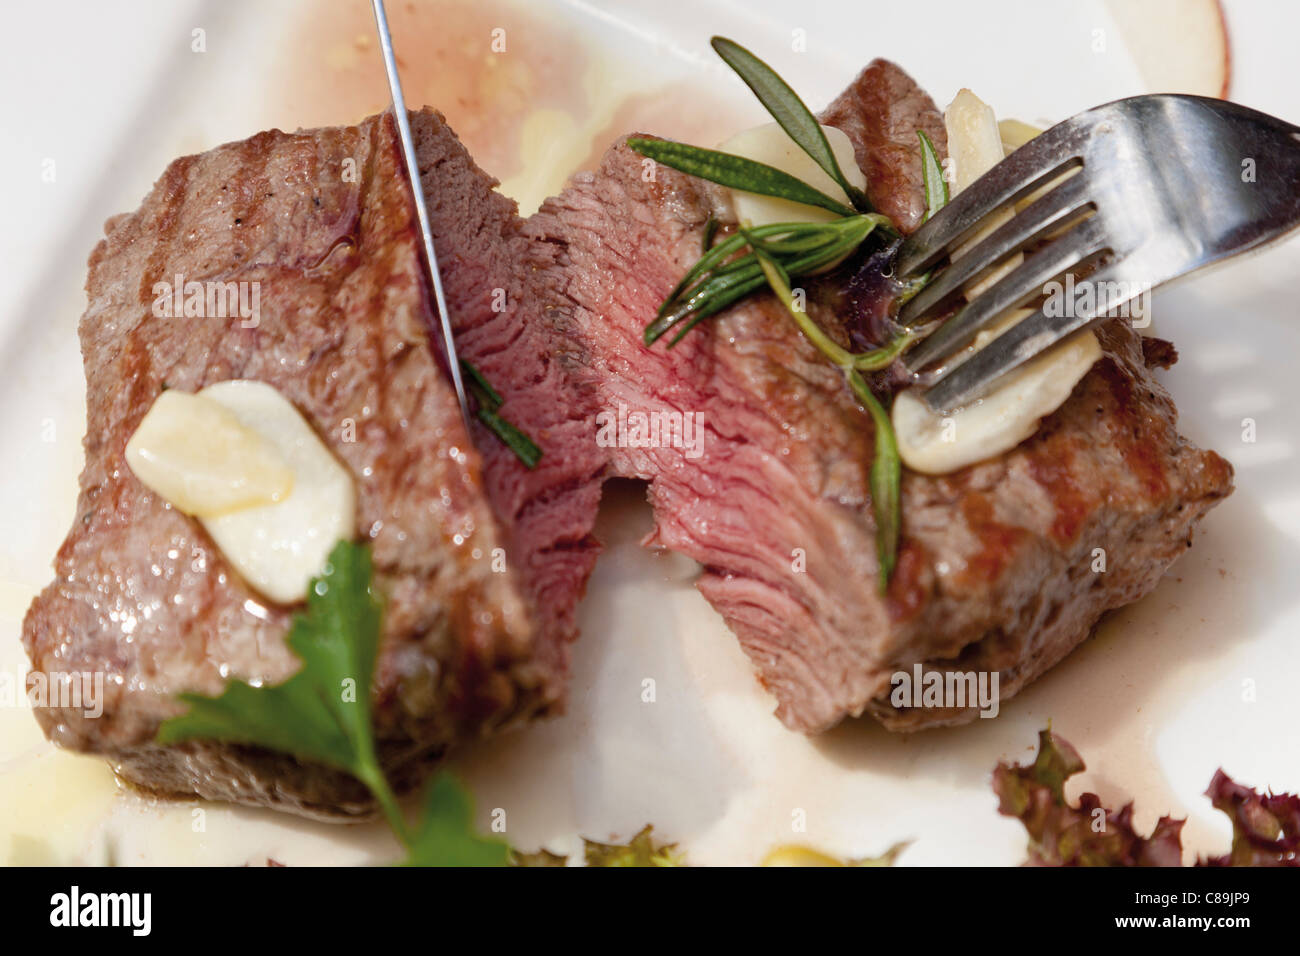 Groppa bistecca immagini e fotografie stock ad alta risoluzione - Alamy